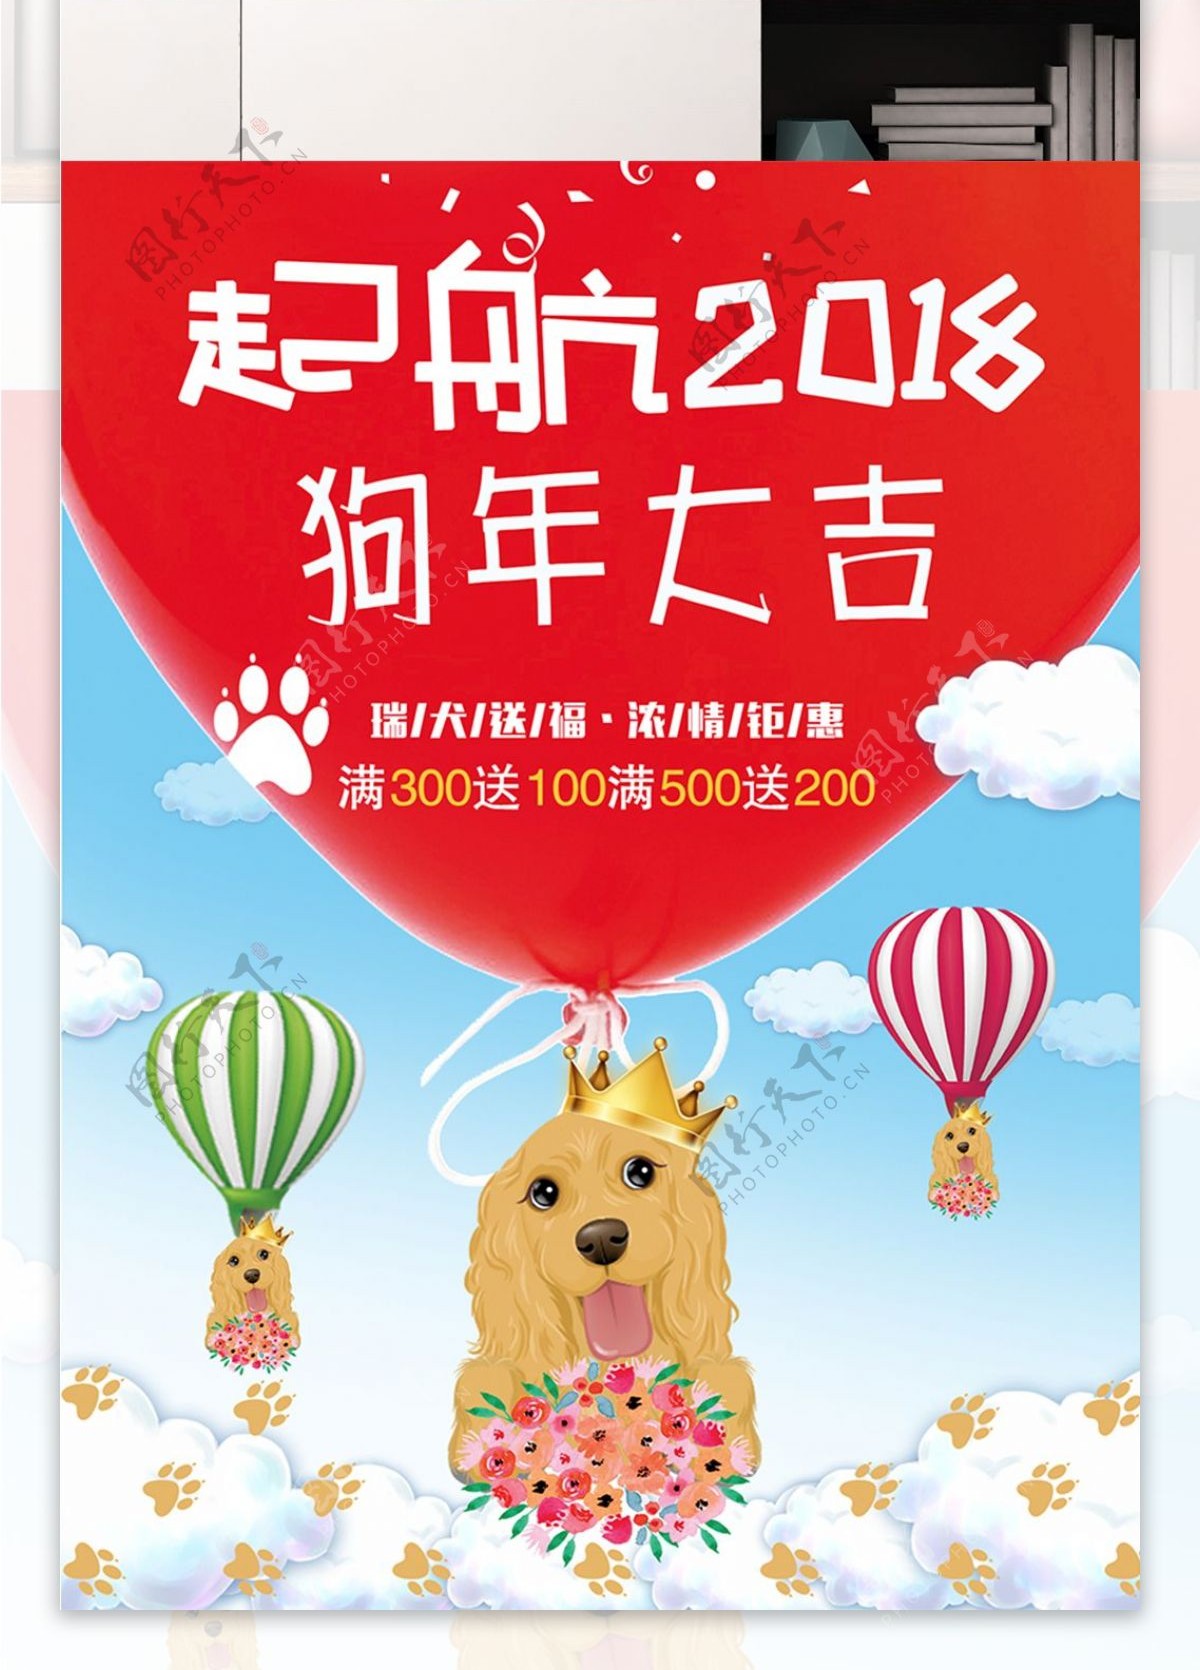 起航2018狗年大吉清新促销海报设计狗年插画